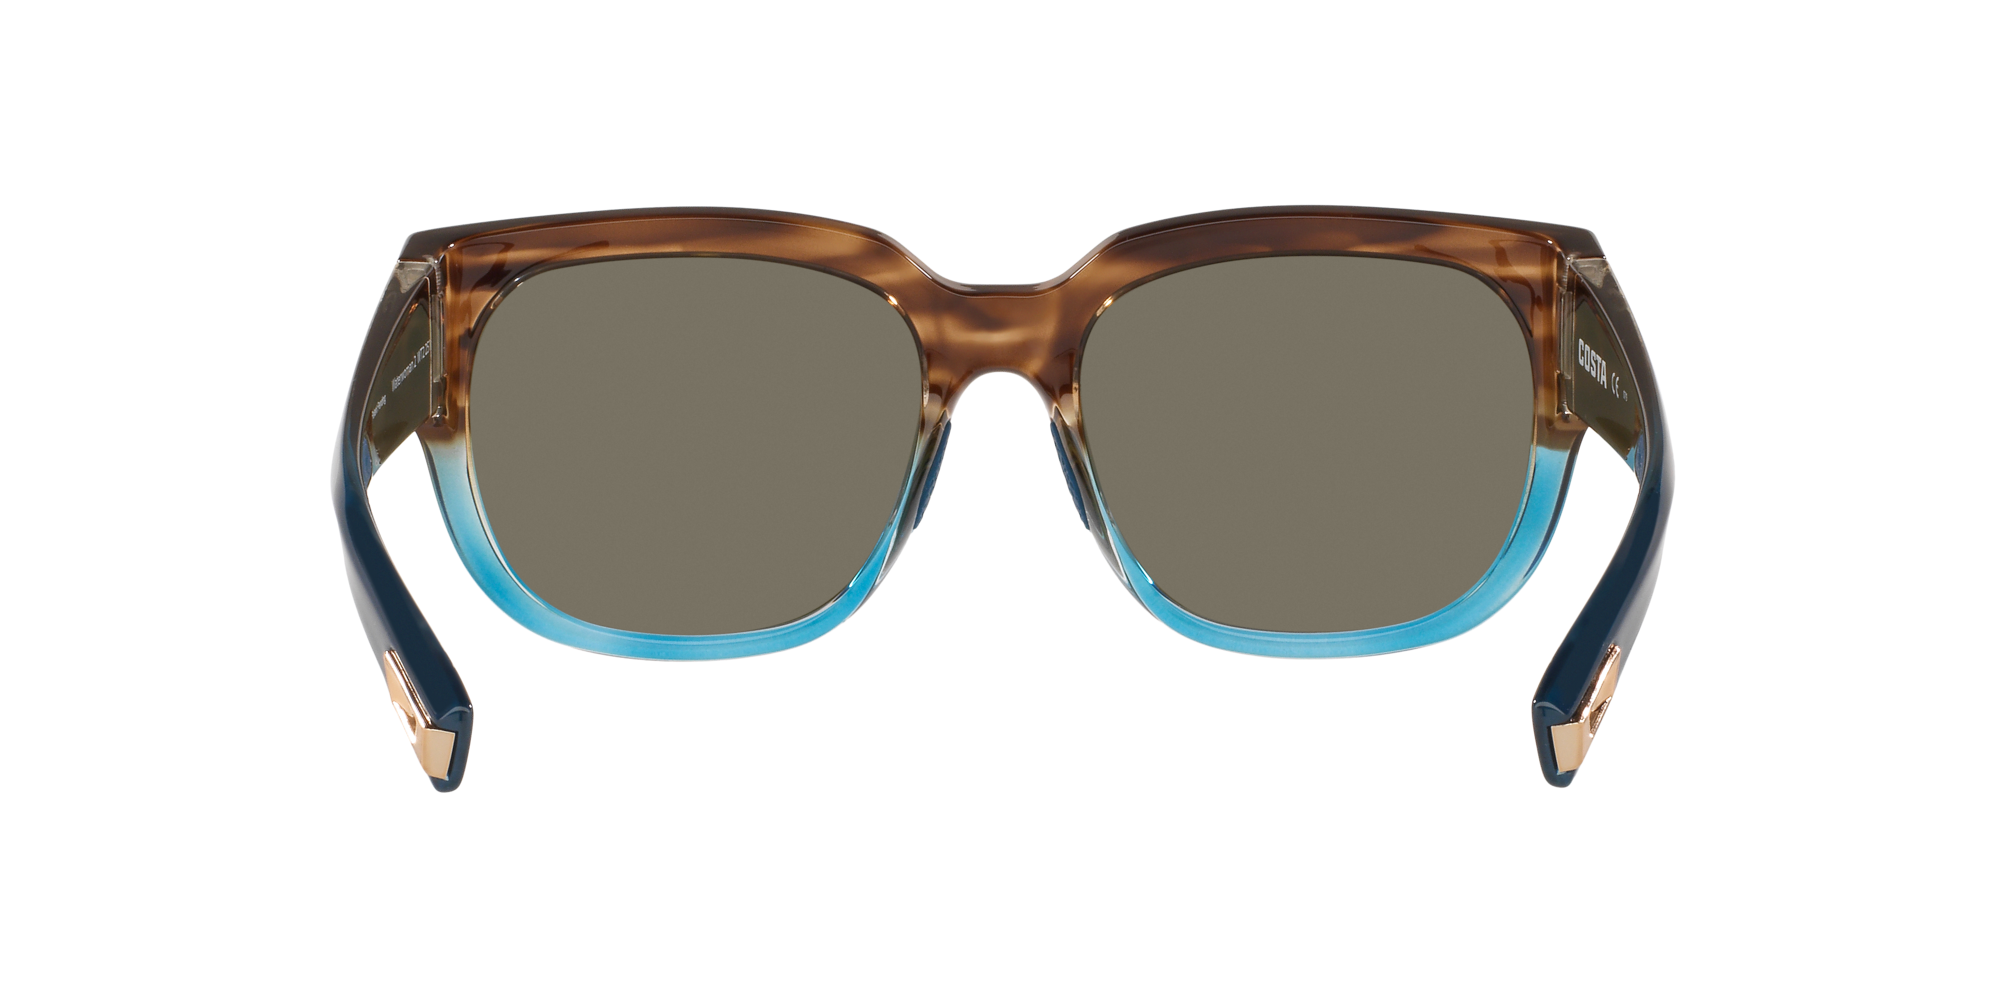 Waterwoman 2 Polarized Sunglasses in Blue Mirror | Costa Del Mar®